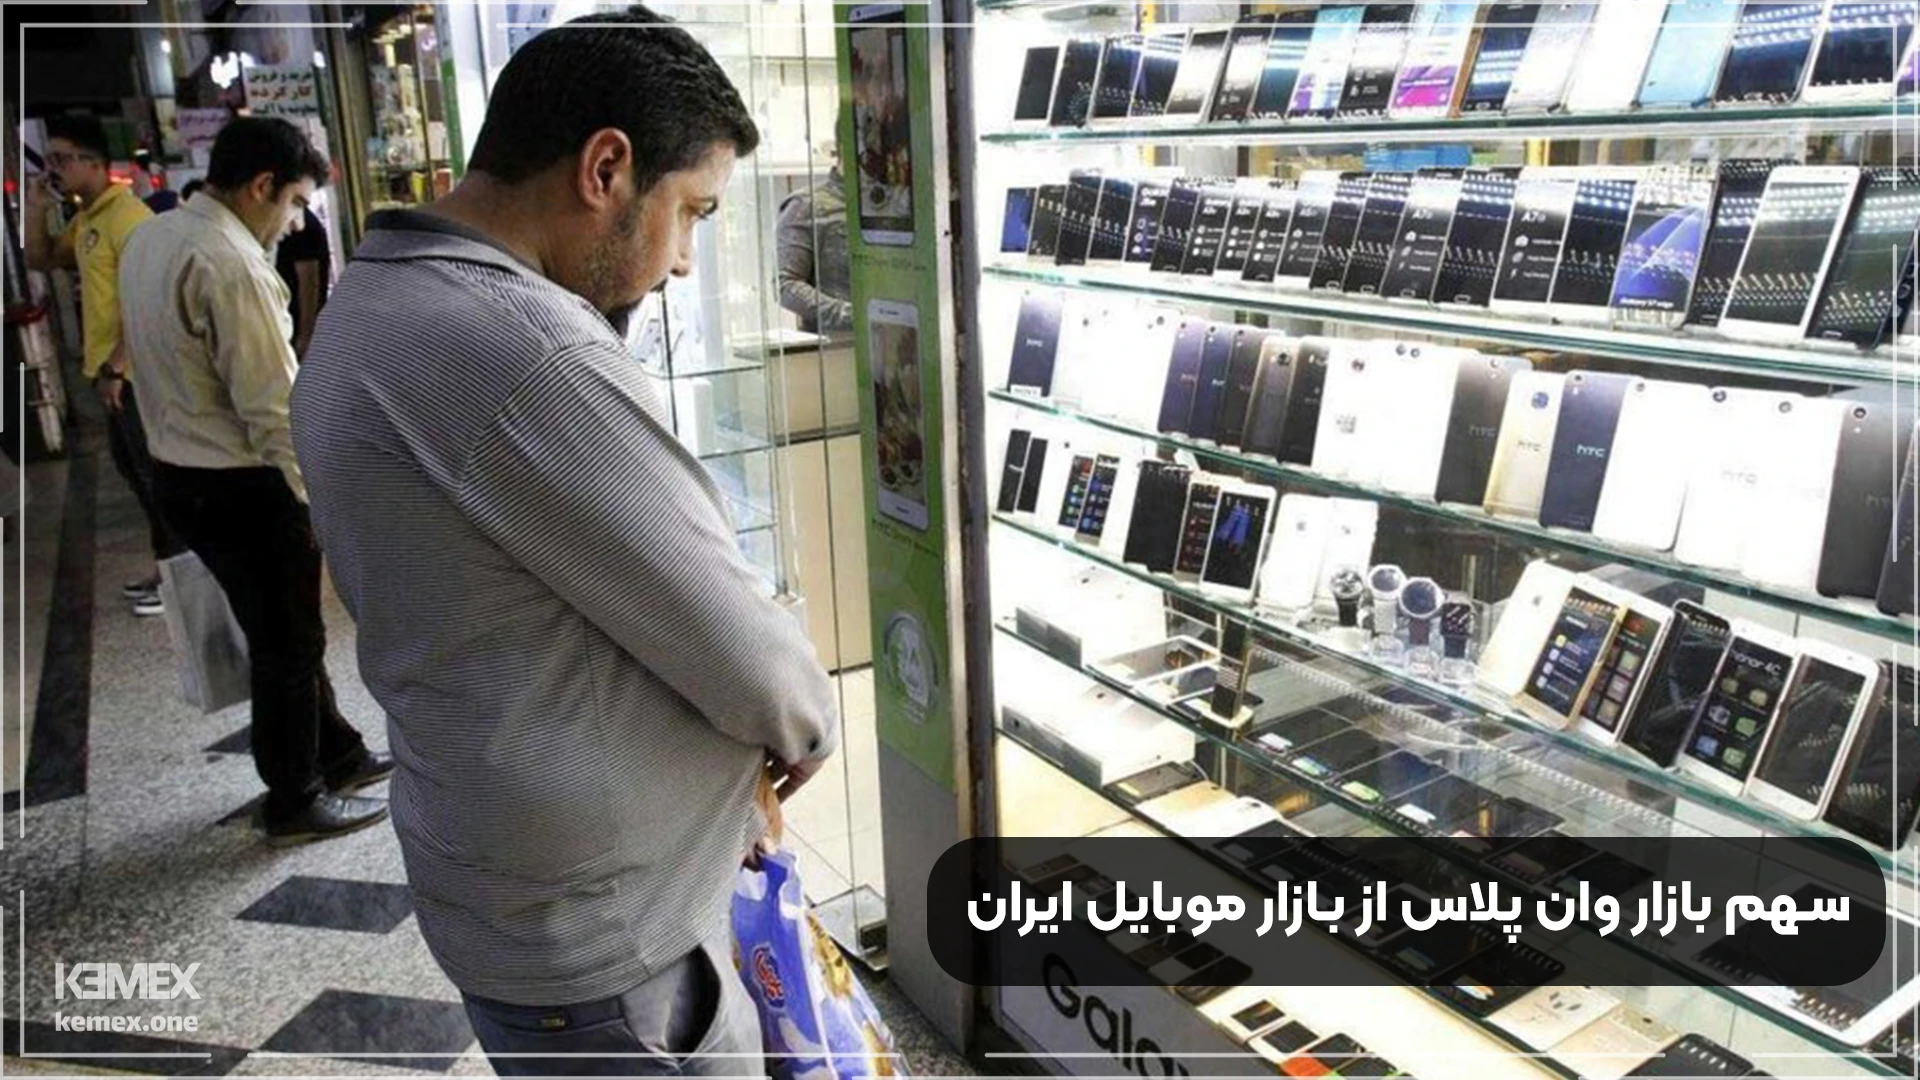 وان پلاس در بازار موبایل ایران